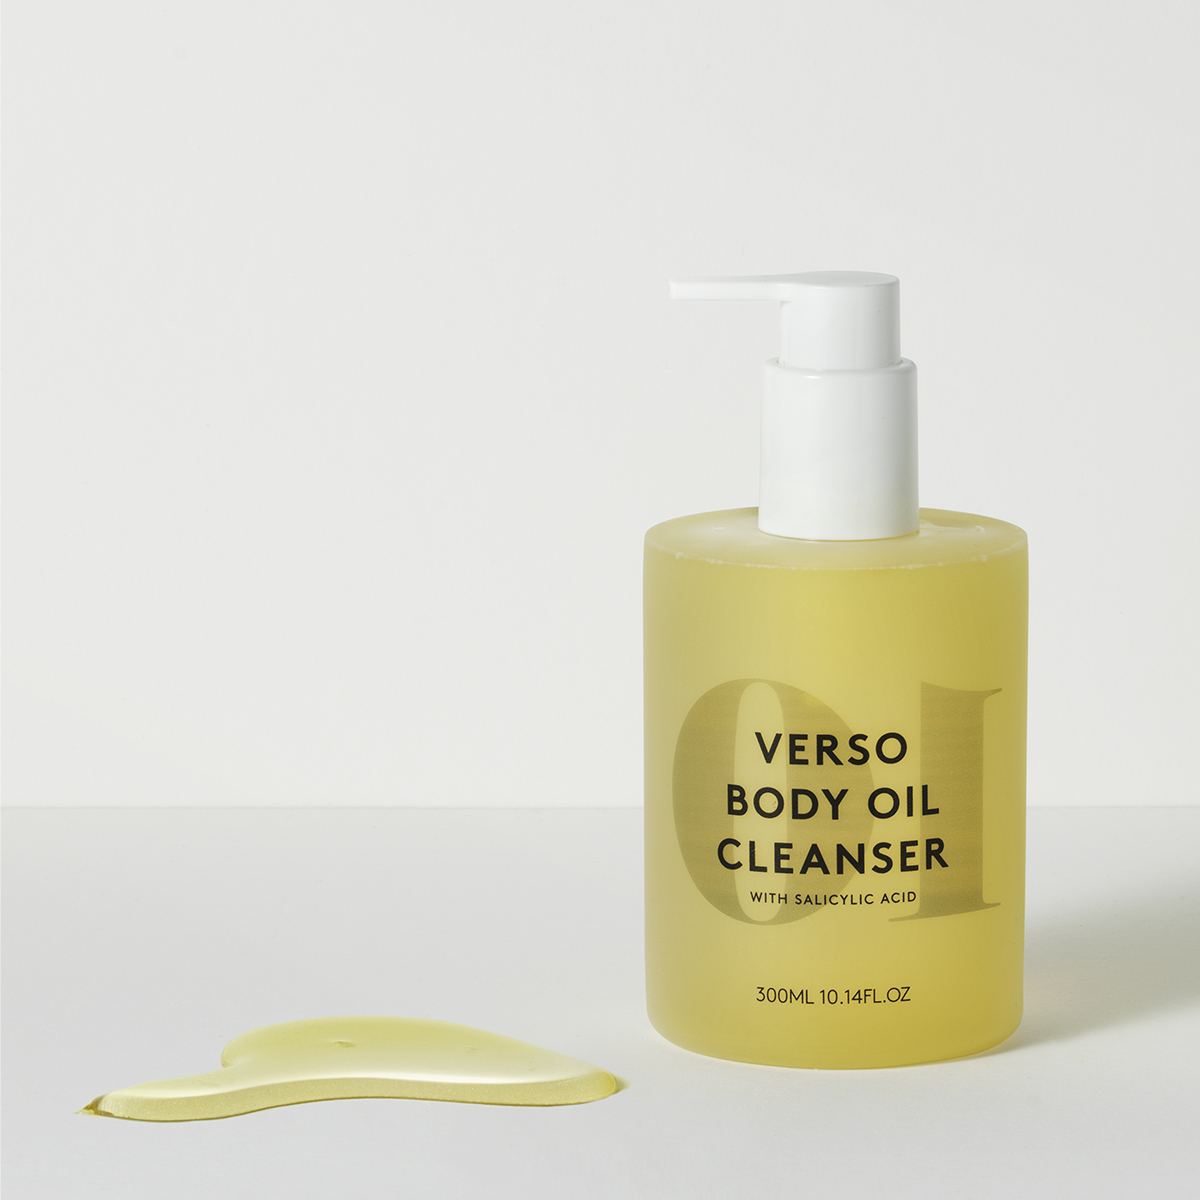 Verso Body Oil Cleanser